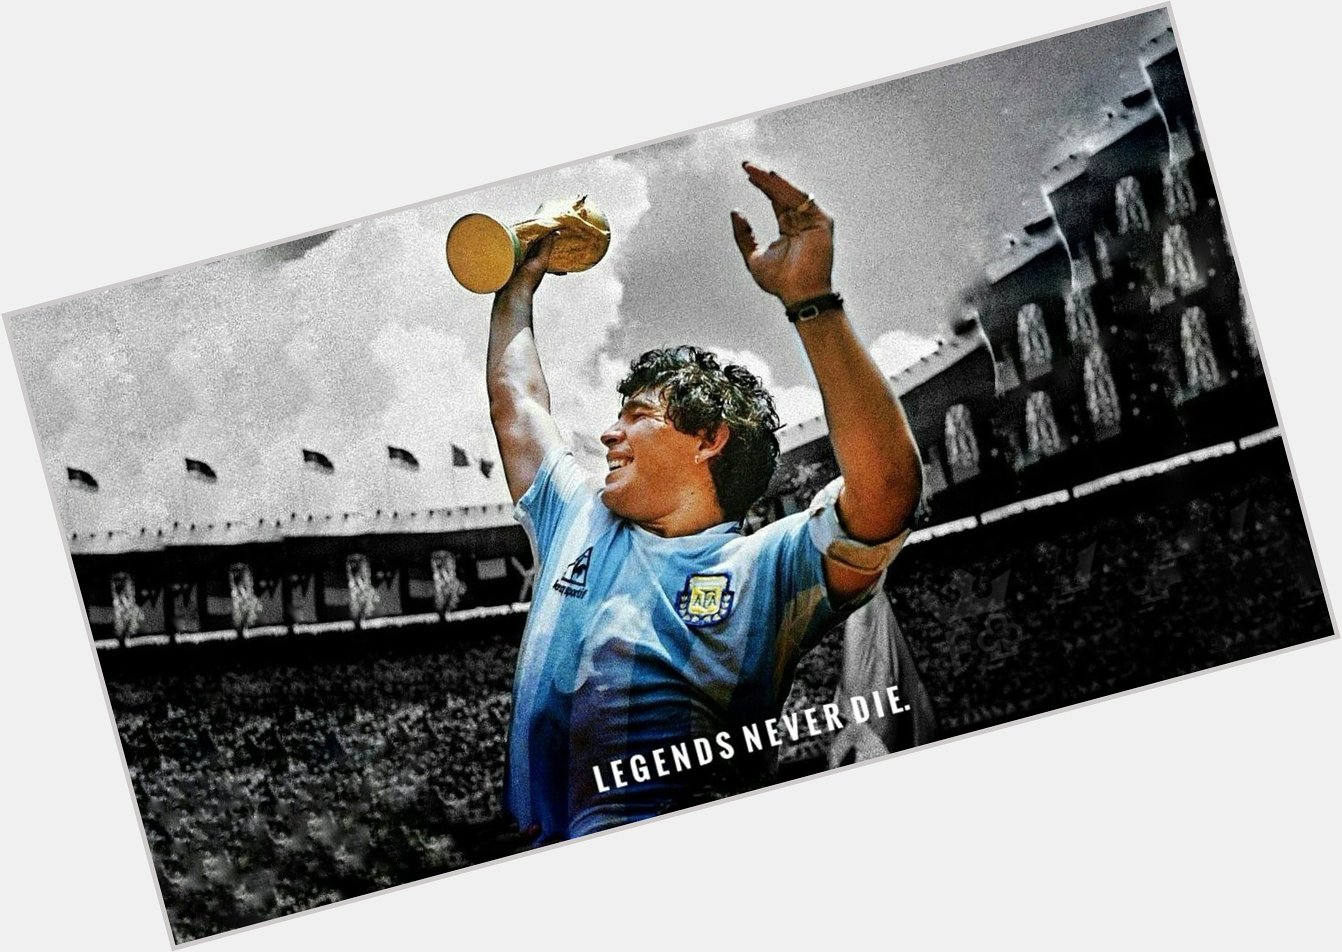 Happy Birthday Diego Maradona. May peace & light be your way forever. 